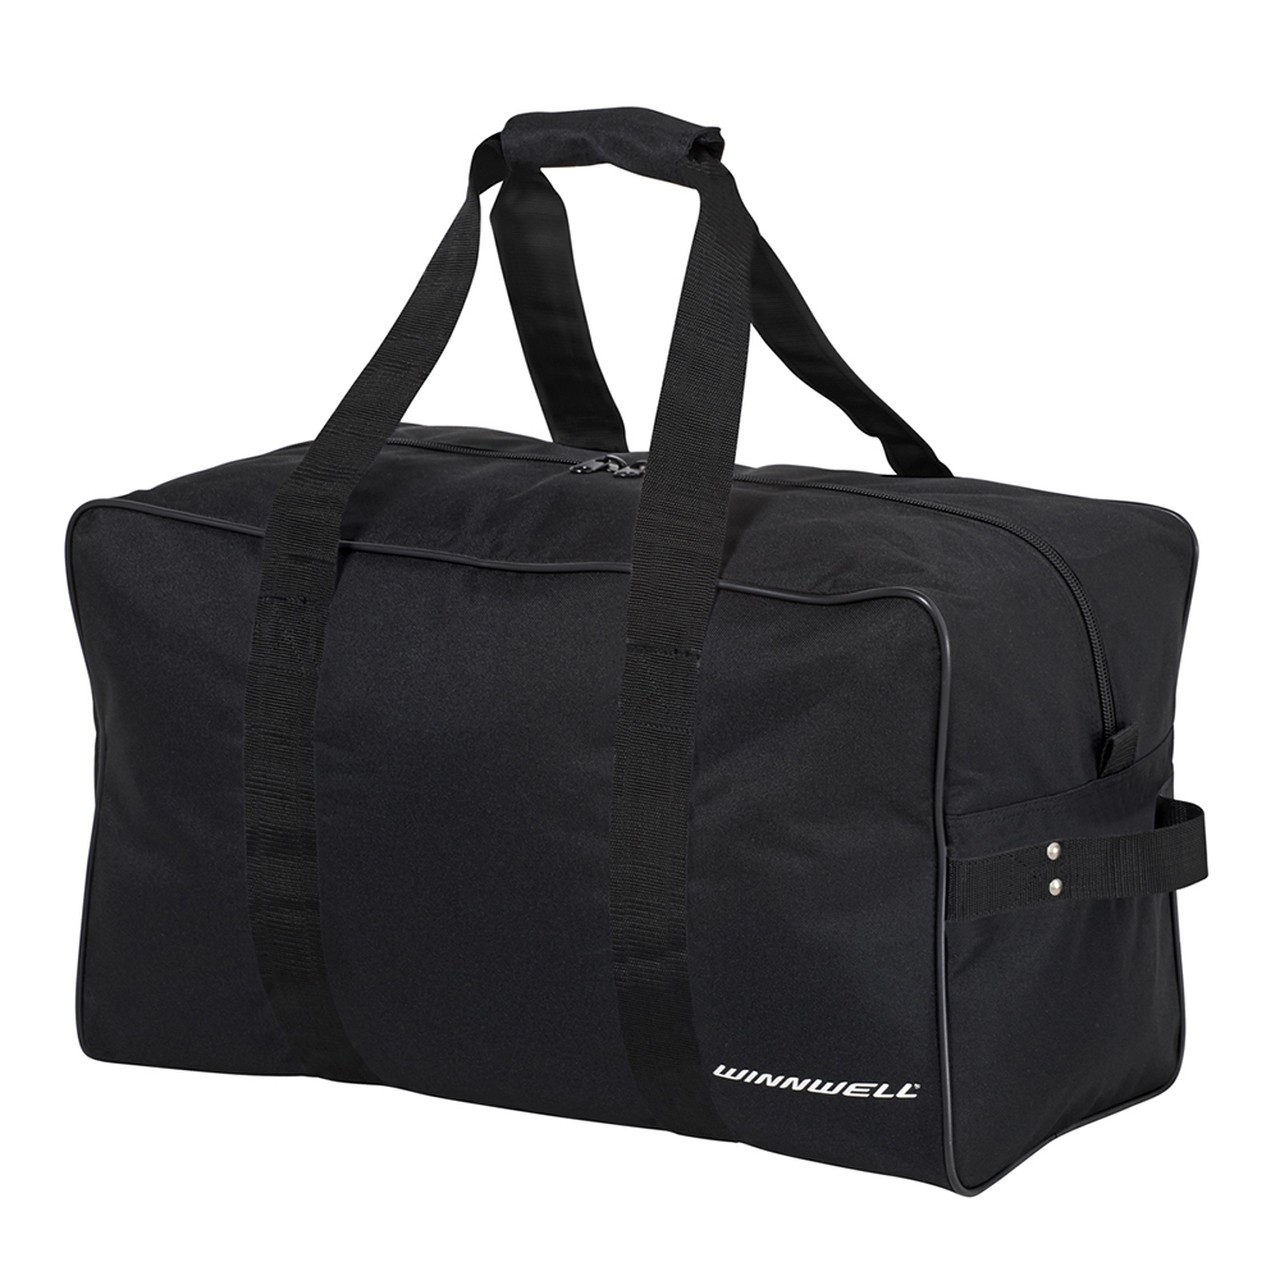 WINNWELL Senior Equipment Basic Carry Bag